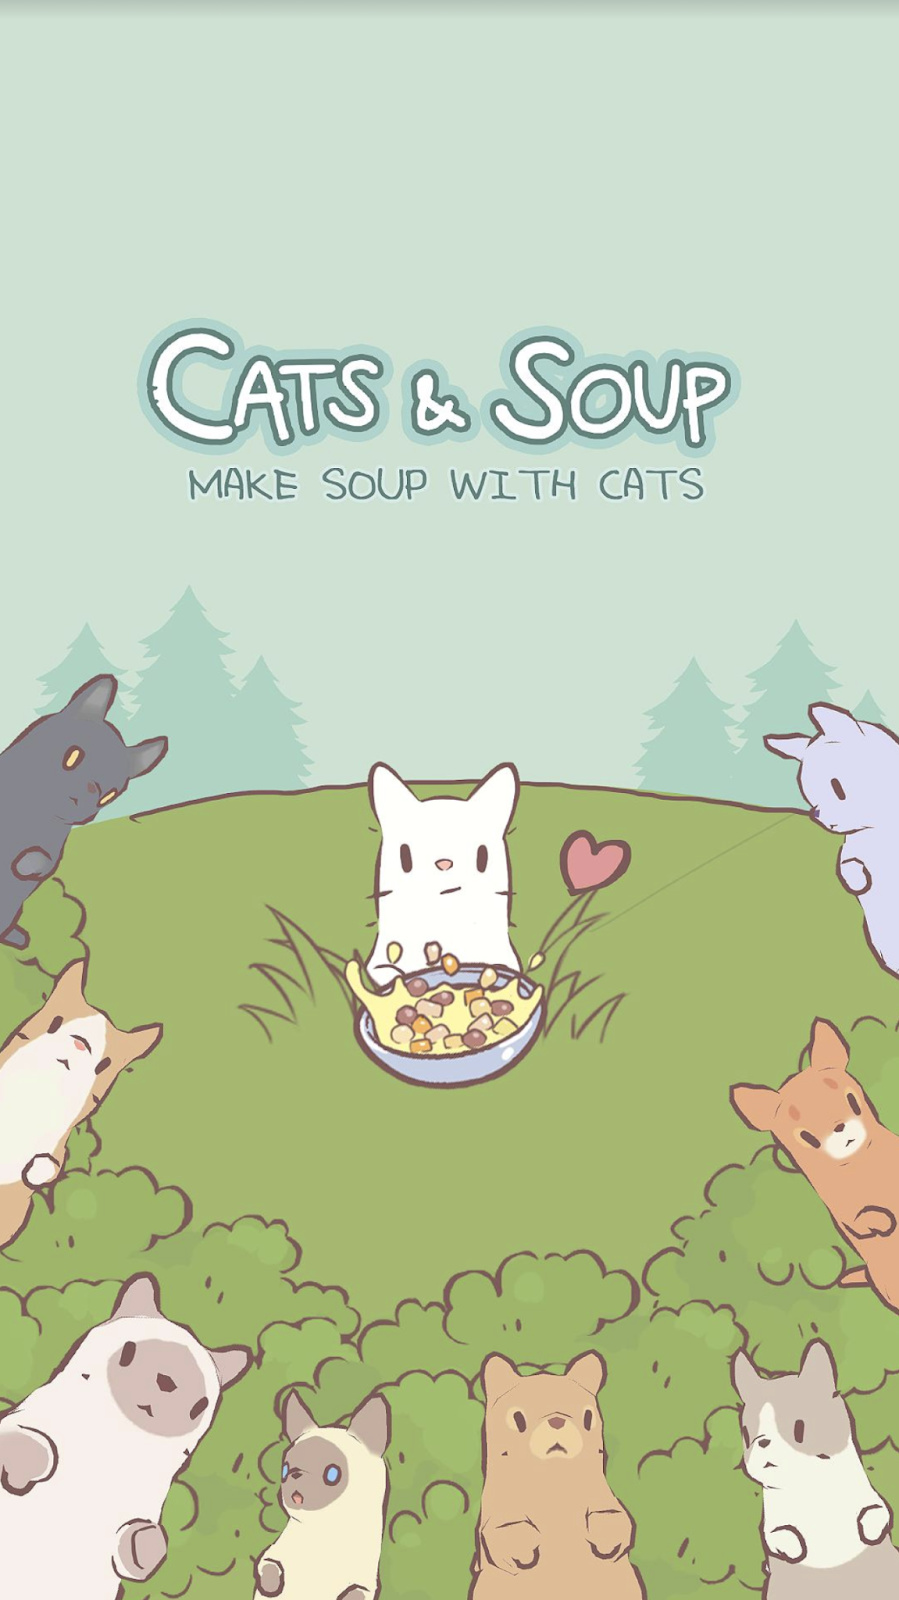 【手機遊戲】NEOWIZ 治癒型手遊「貓咪和湯」進行新年活動-第1張